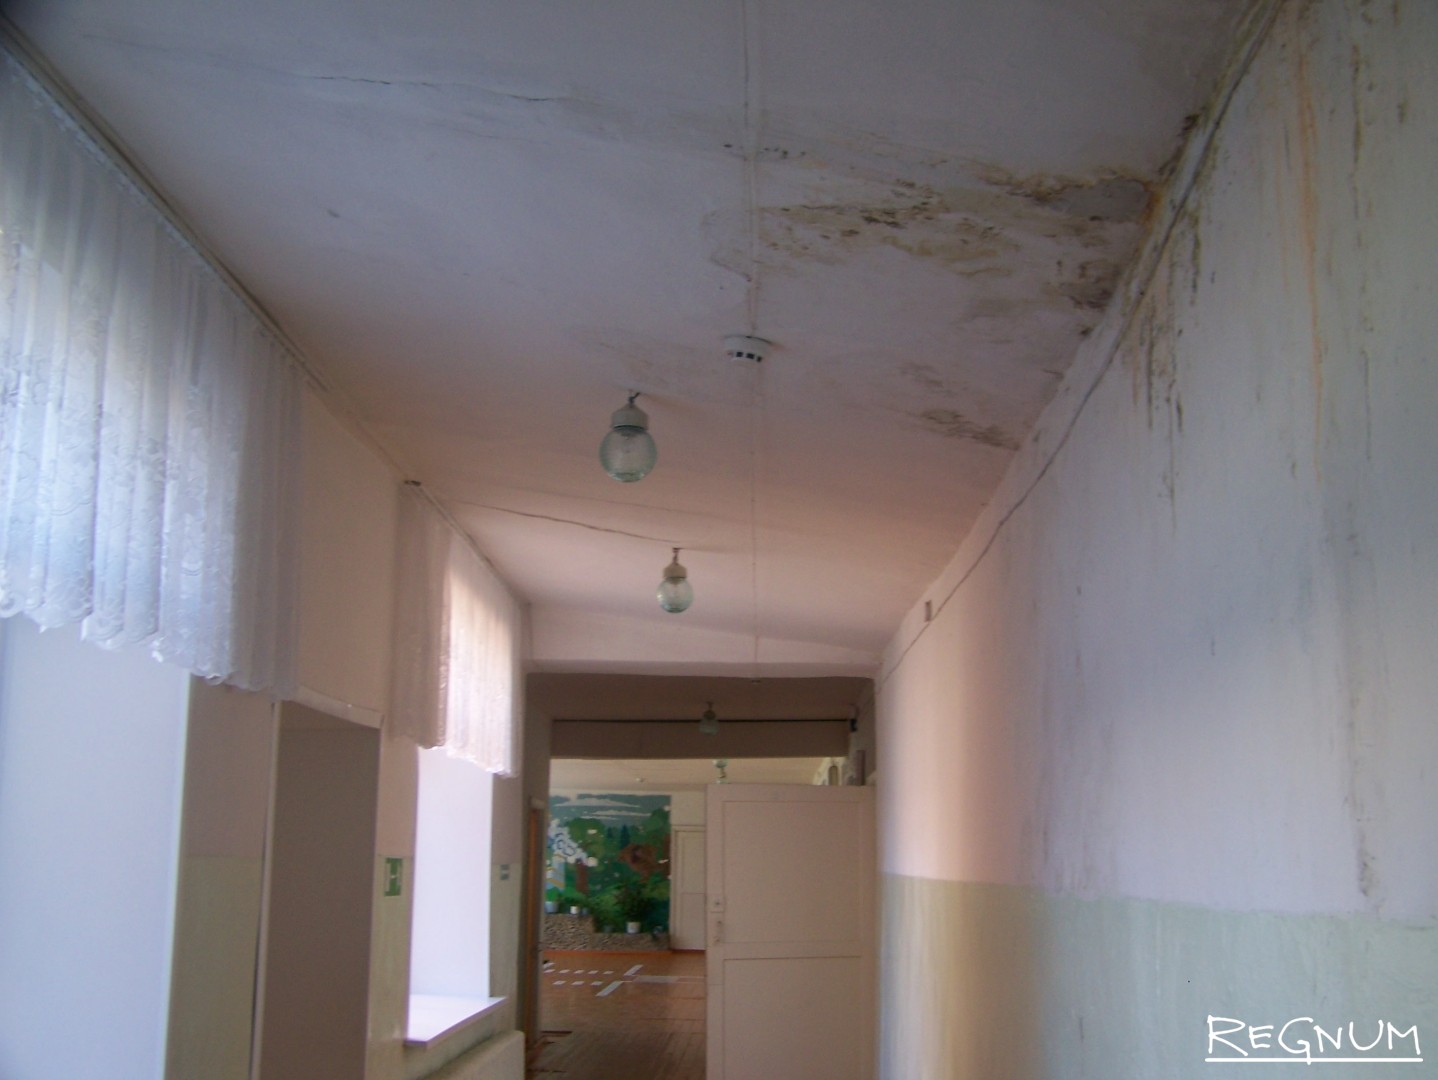 Так выглядит фрагмент потолка в Кучукской средней школе: потеки образовываются из-за протекающей крыши. День знаний. 